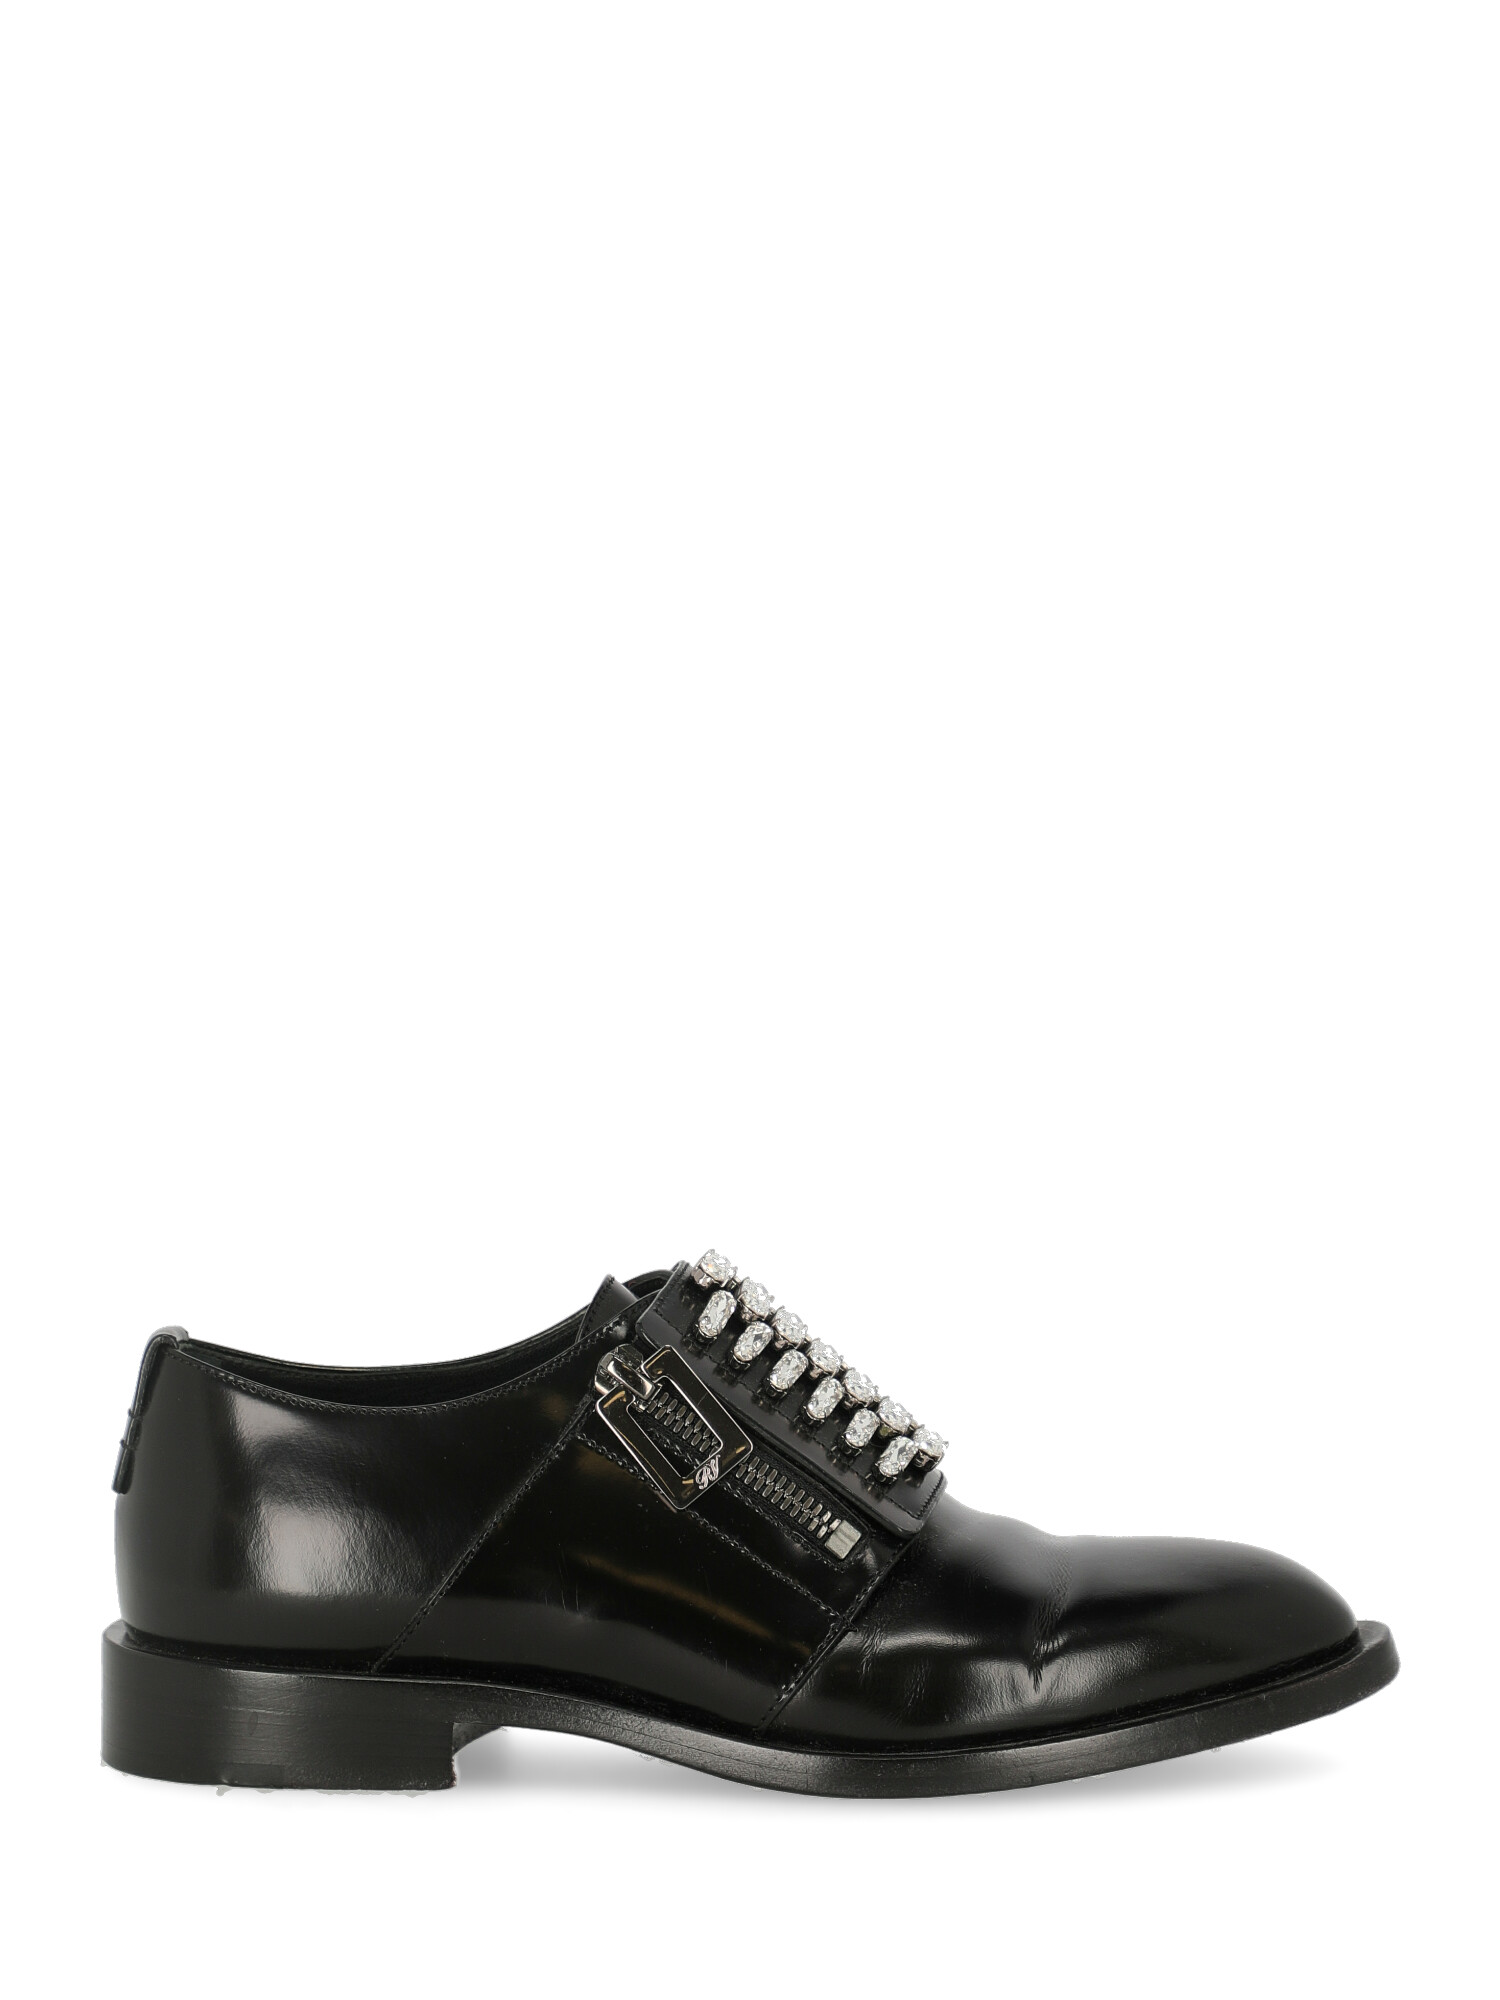 Roger Vivier Femme Chaussures à lacets Black Leather